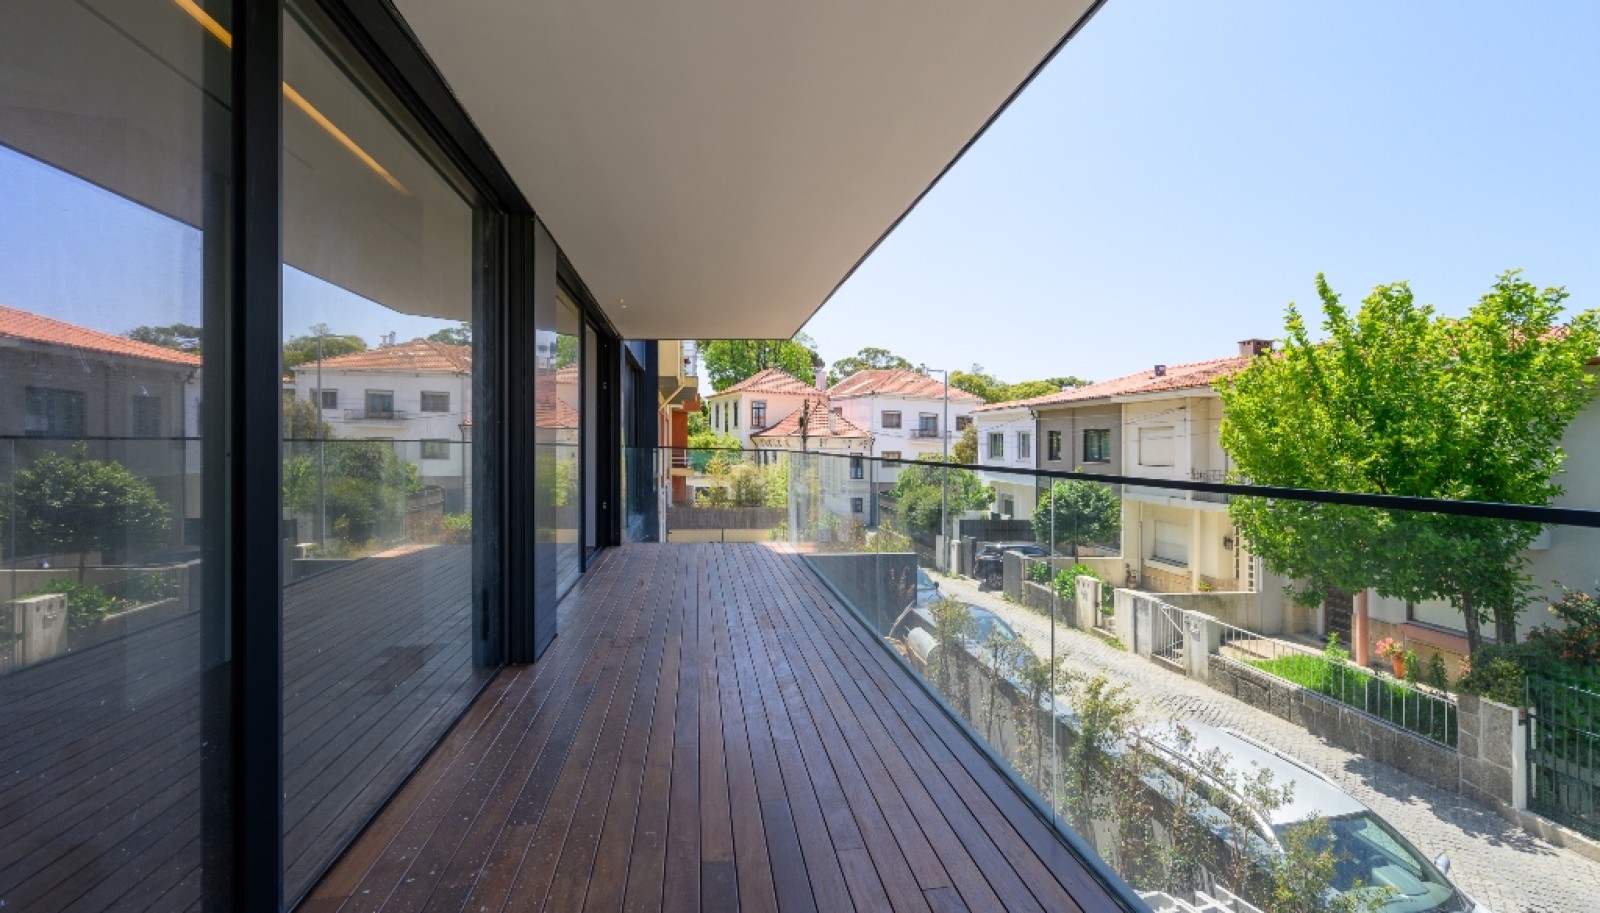 Venda: Apartamento novo com terraço, na Boavista, Porto_267514